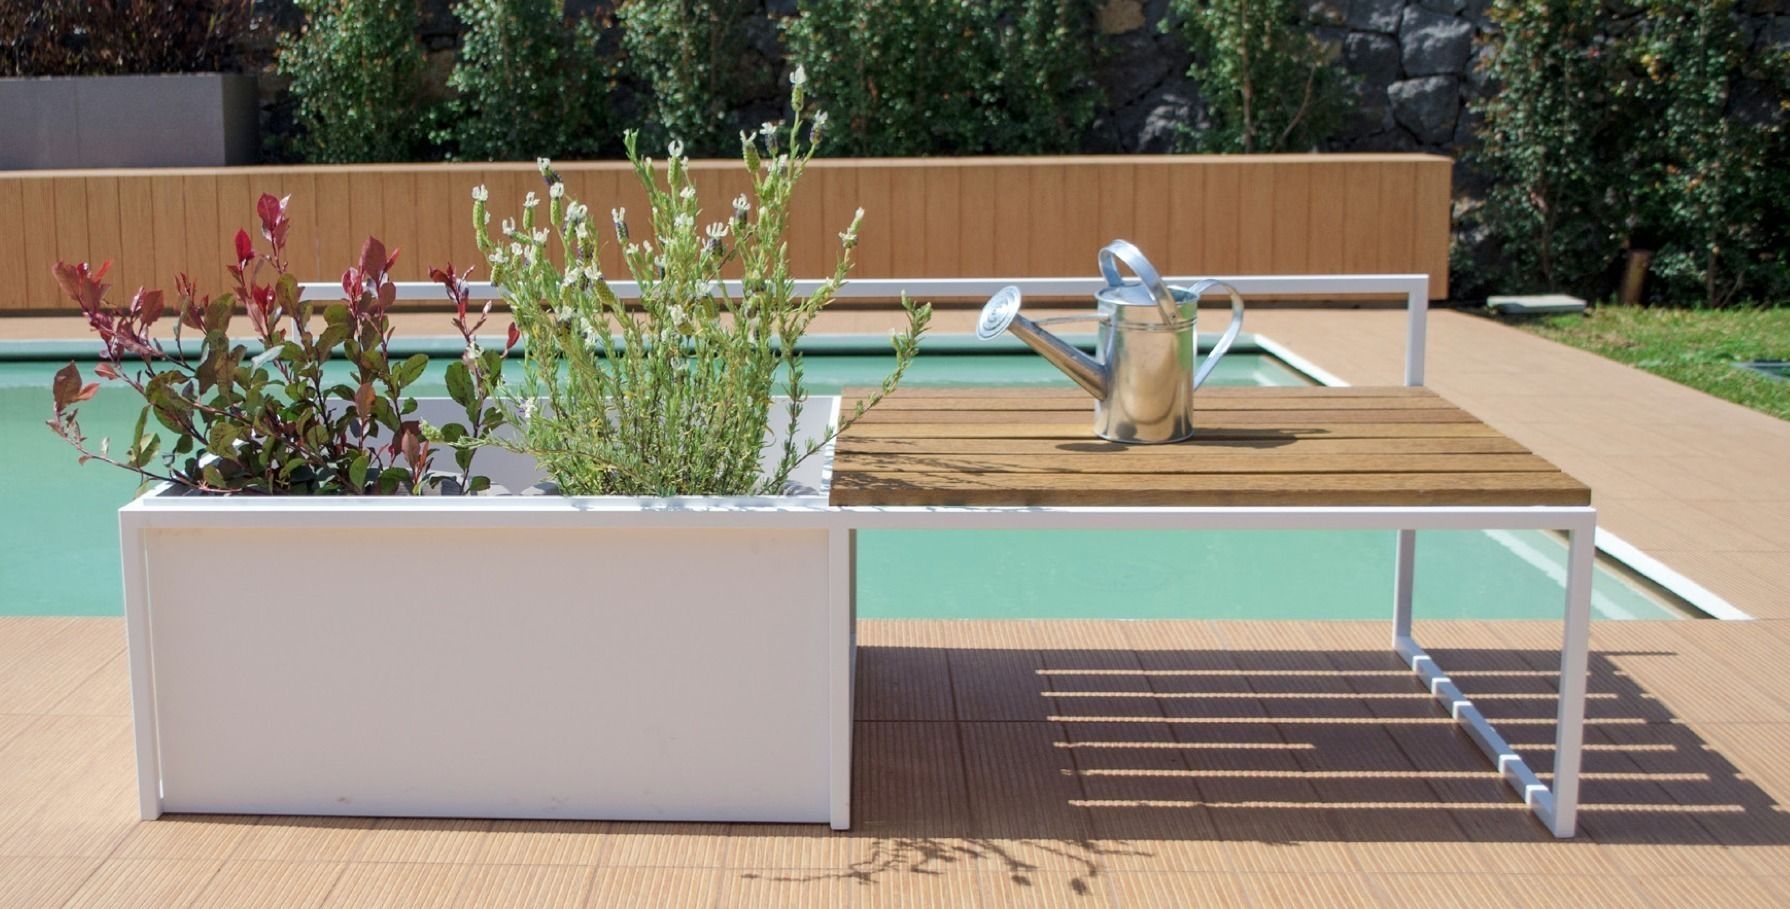 PLANTER BENCH D'Arrigo External Design Modern garden Furniture